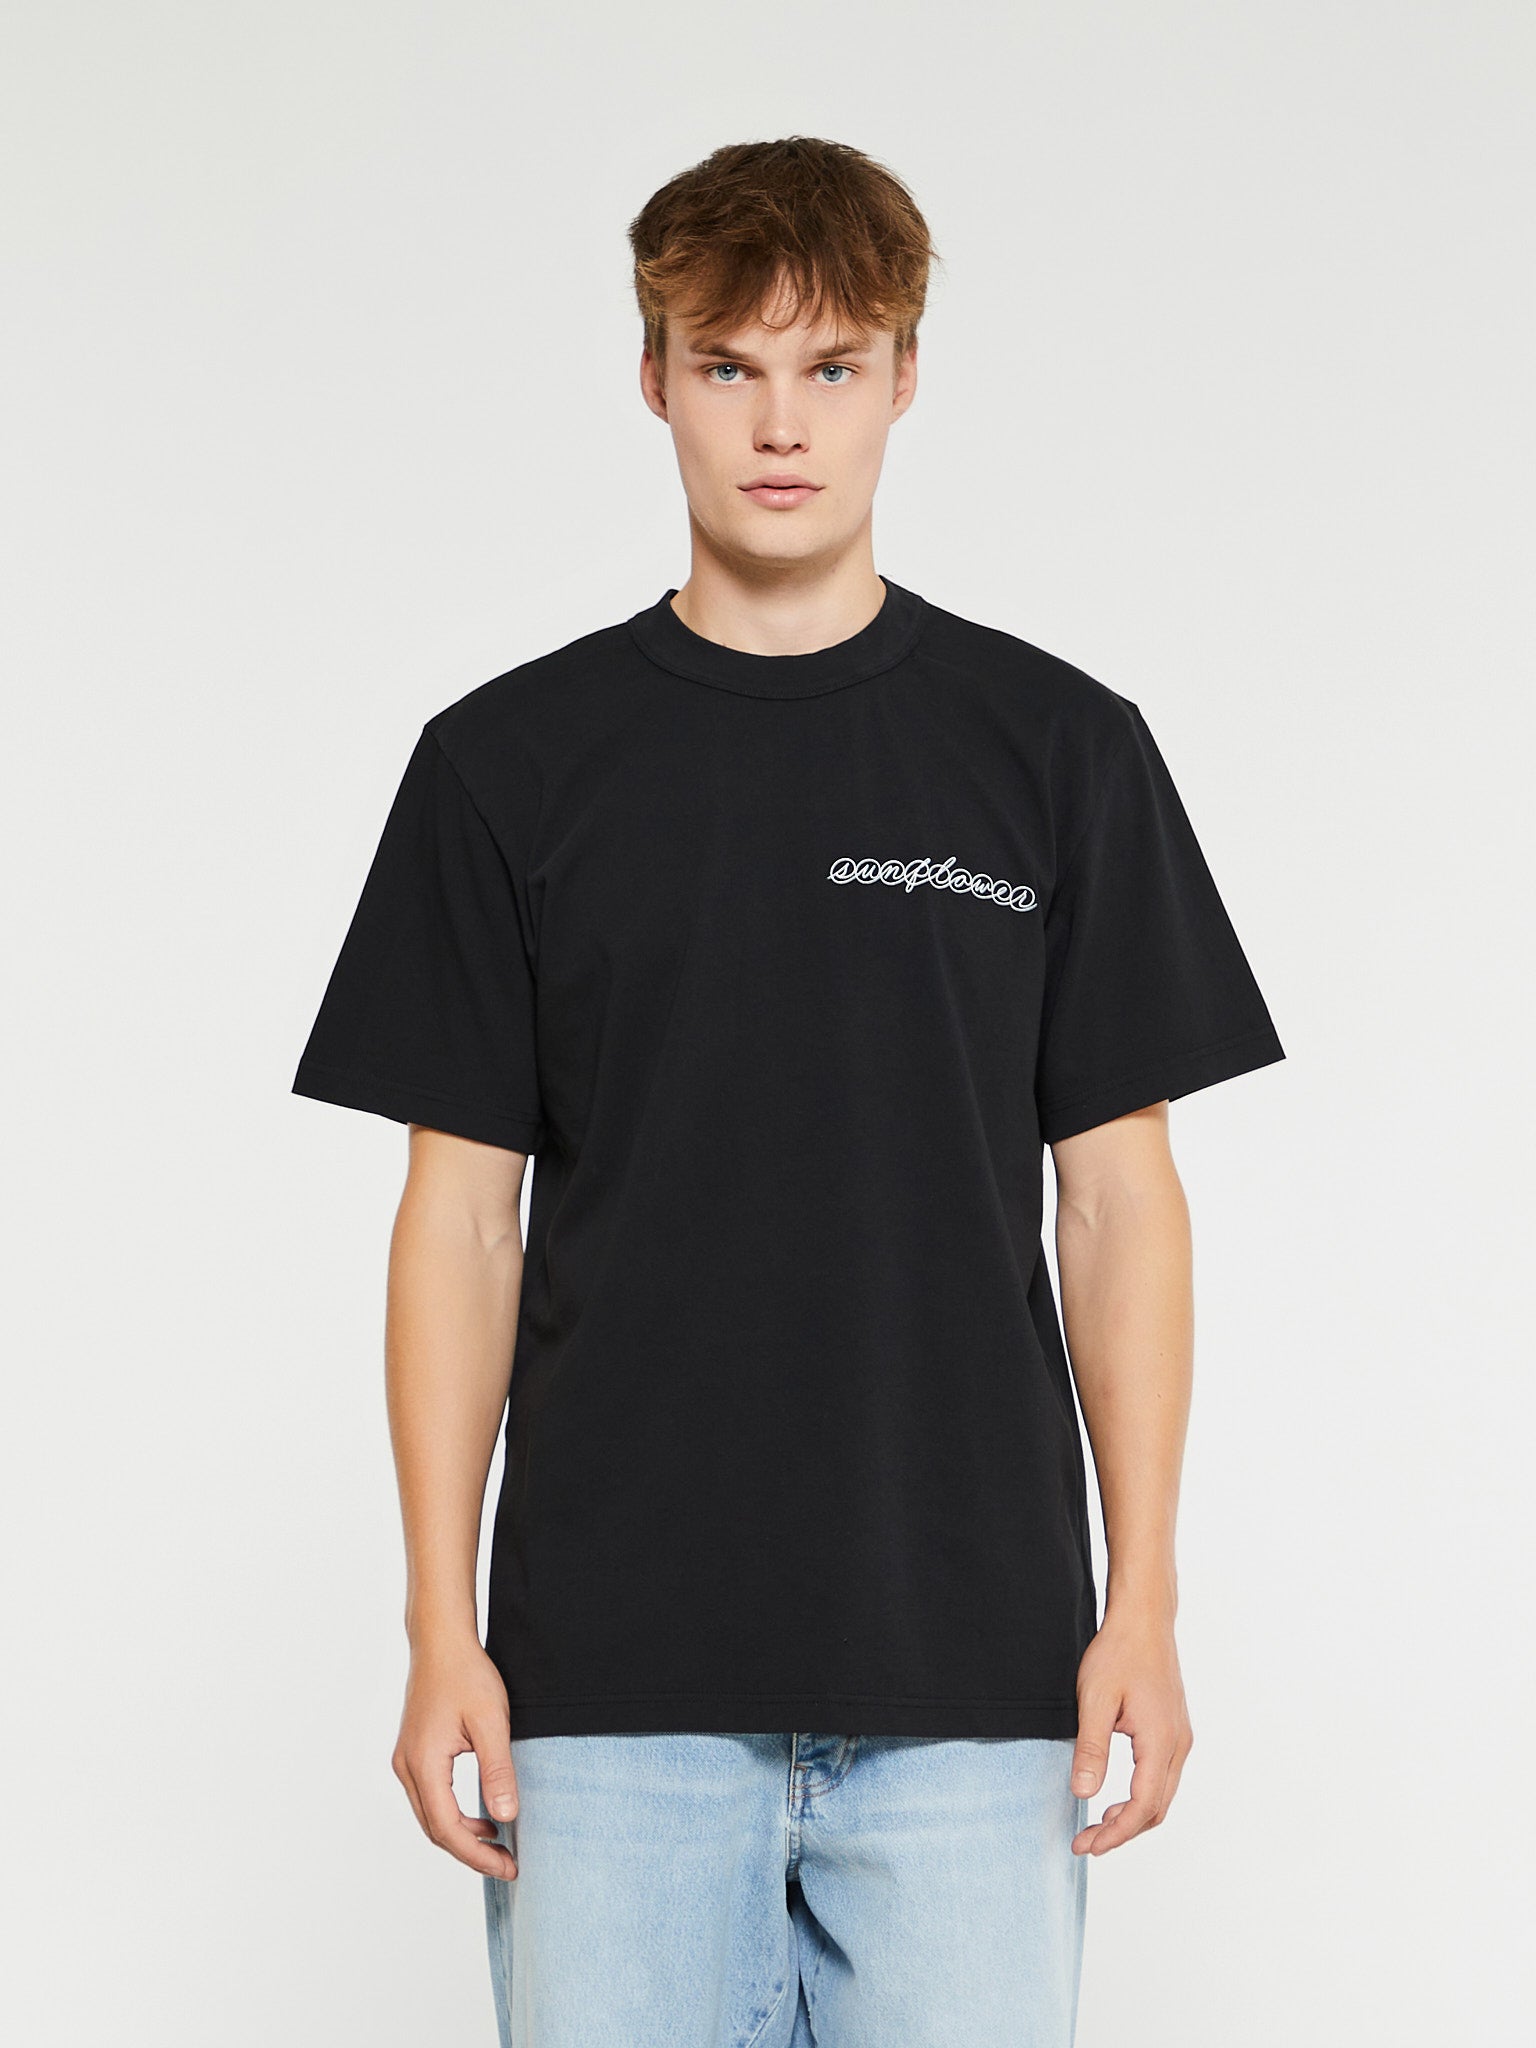 Sunflower - Master Logo T-Shirt in Black